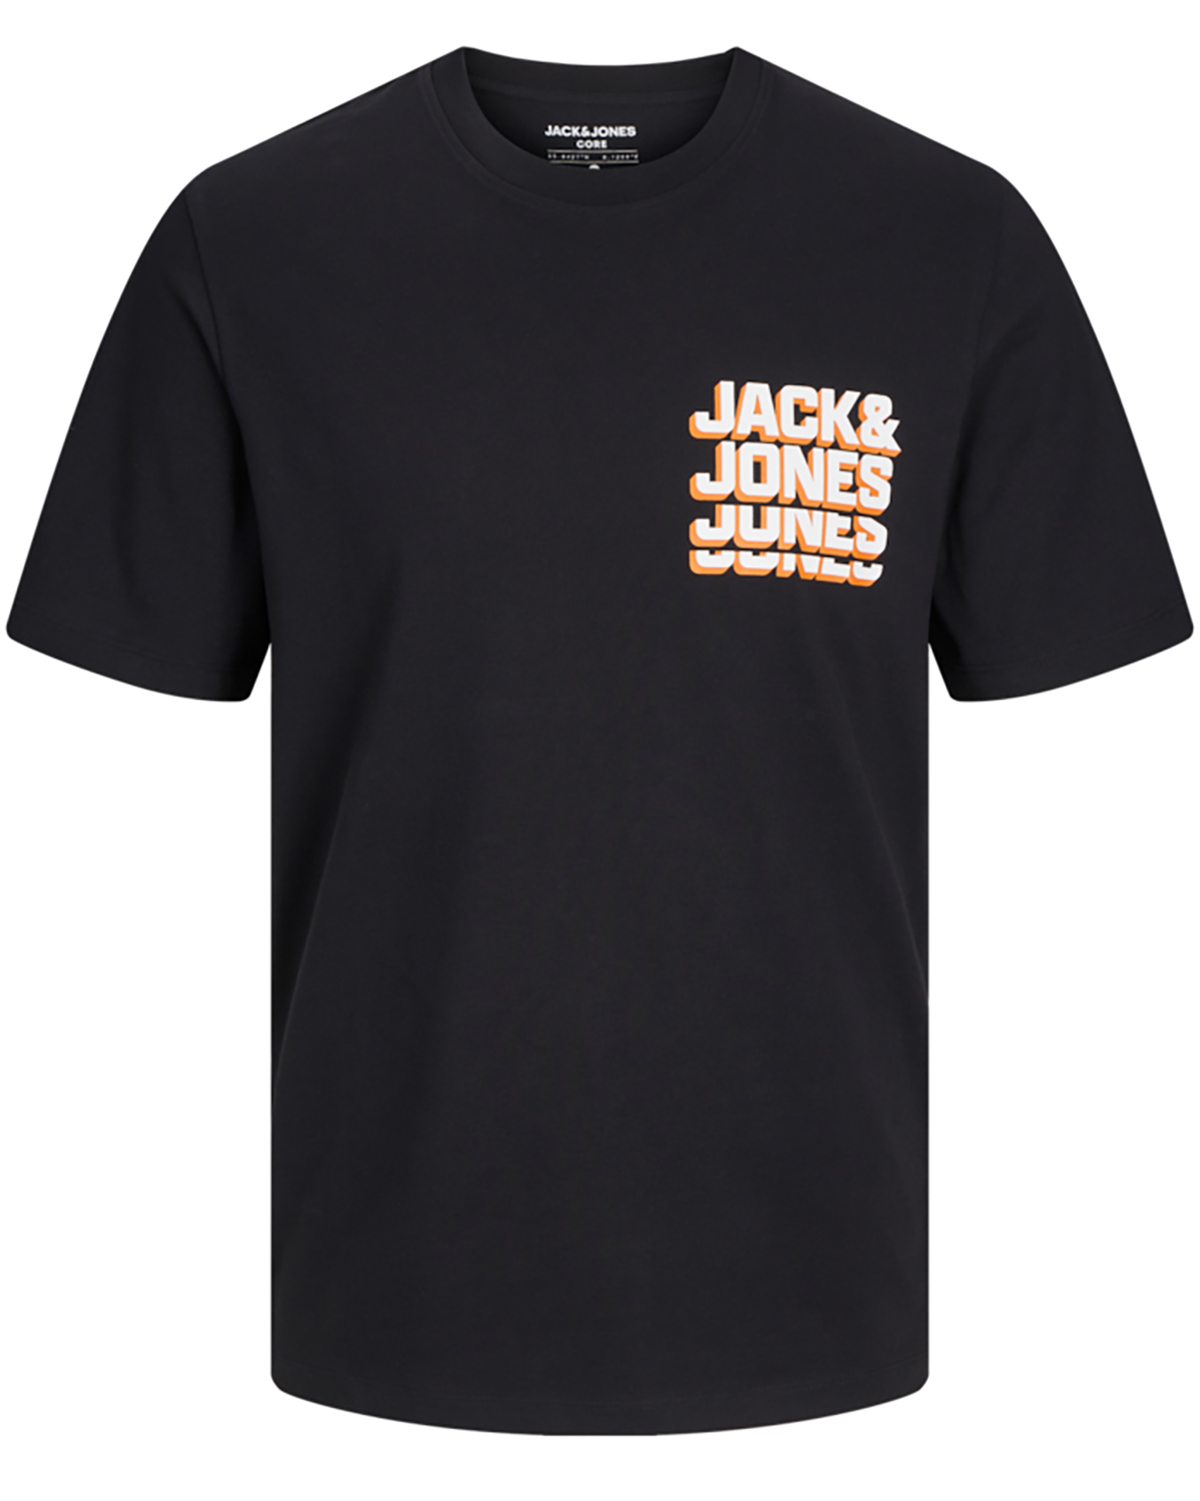 Se Jack & Jones t-shirt s/s, Script tee, sort - 176,S+,S hos Umame.dk